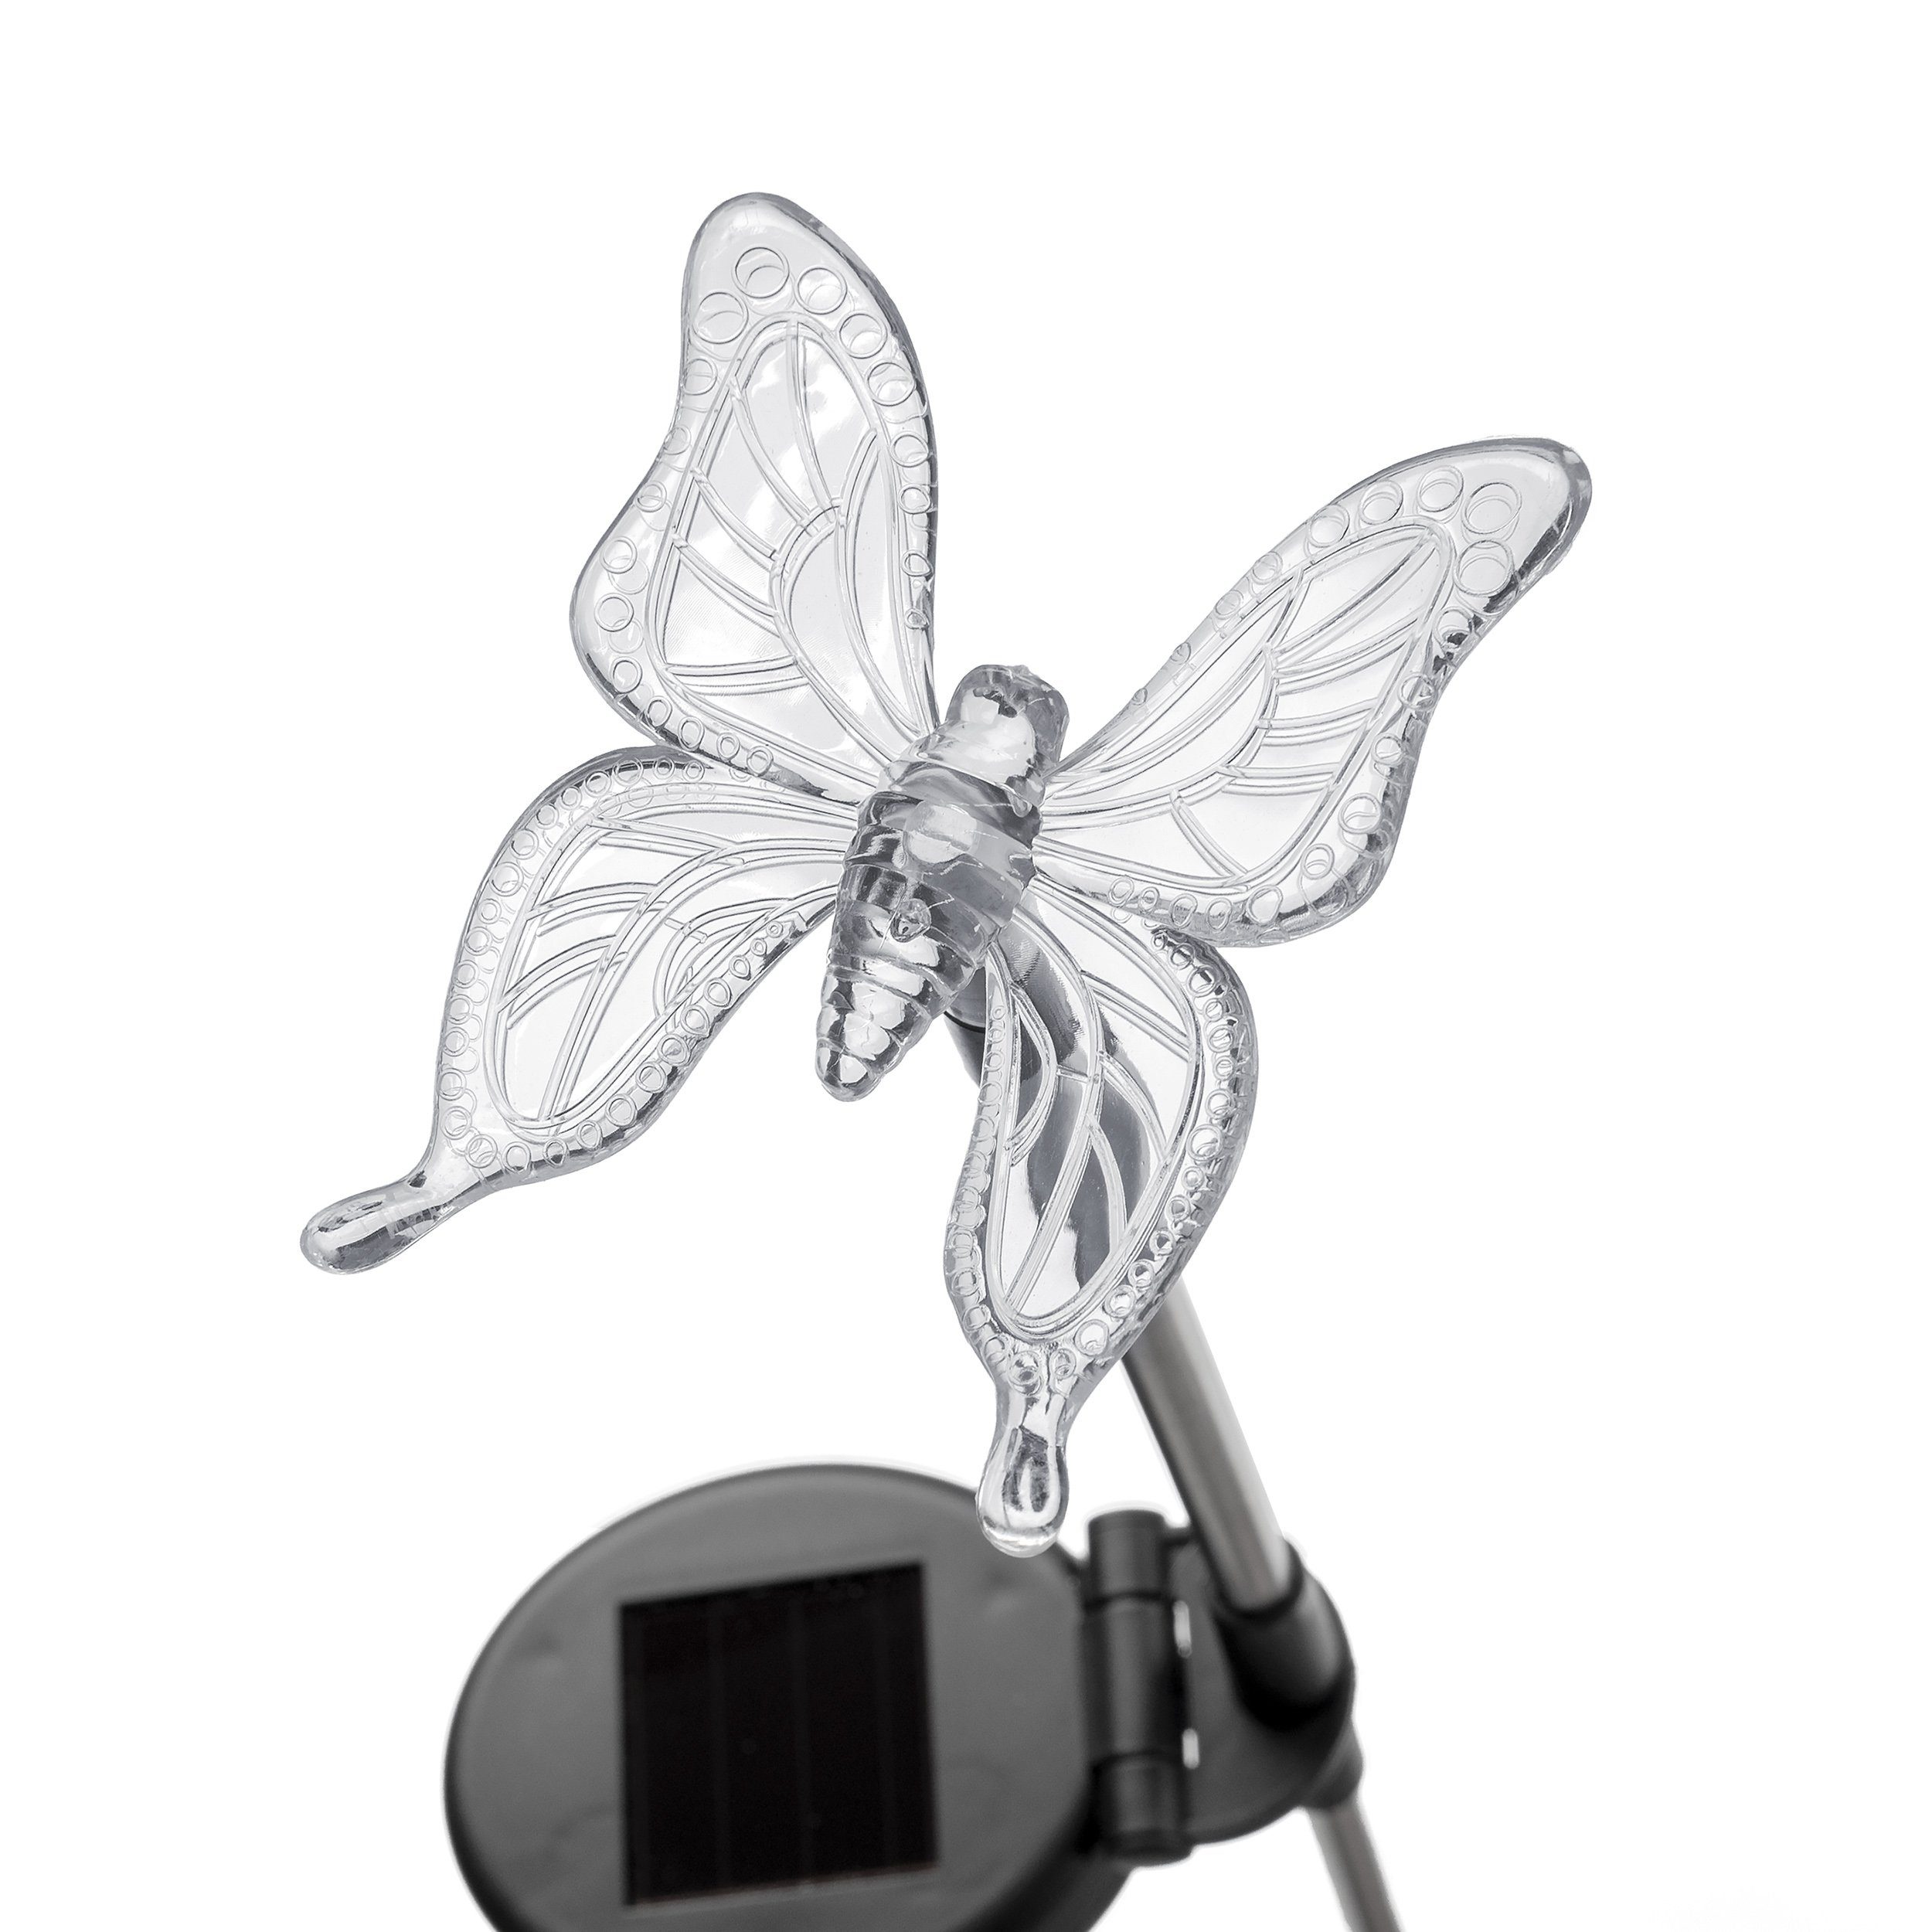 4er LED Motive: moderne Farbwechsel, Kolibri, Gartenstecker, BONETTI Solarlampen, Libelle, automatischer Set Einschaltautomatik Solarleuchte 4 Solar Blume, Schmetterling,